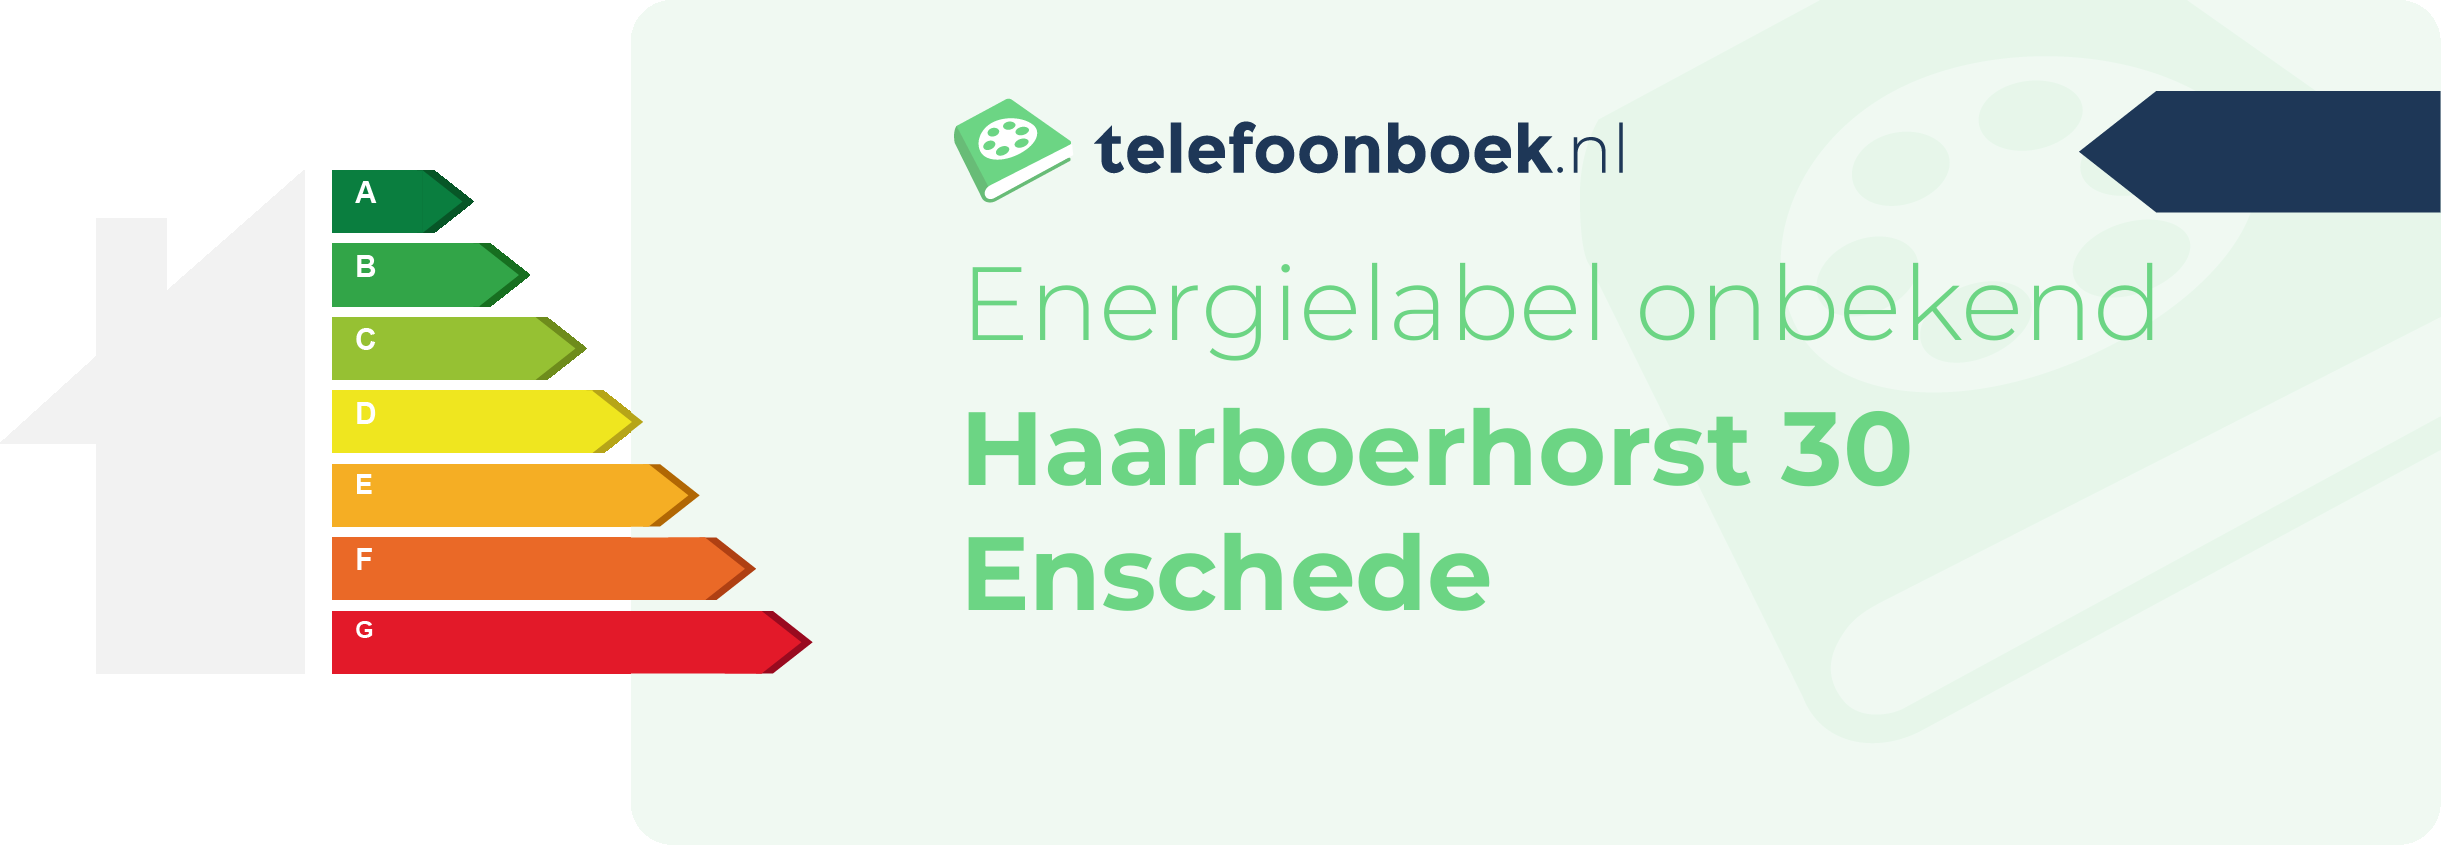 Energielabel Haarboerhorst 30 Enschede